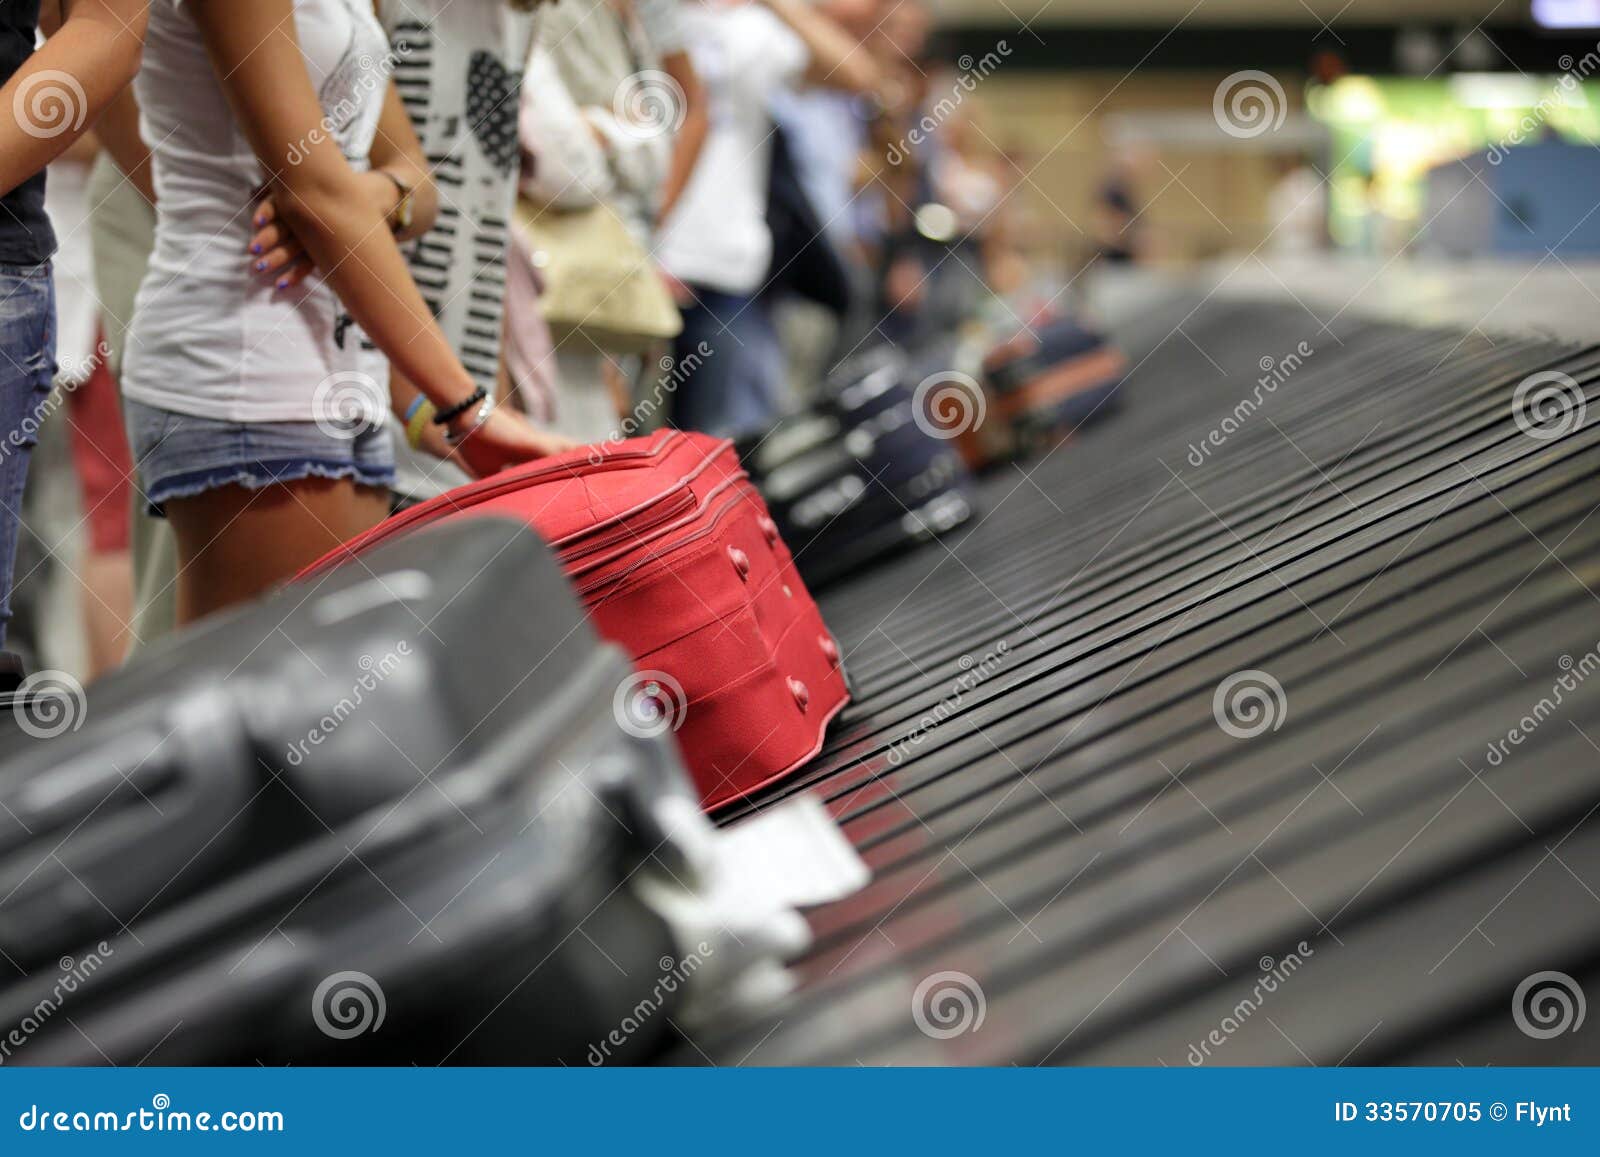 baggage claim at airport